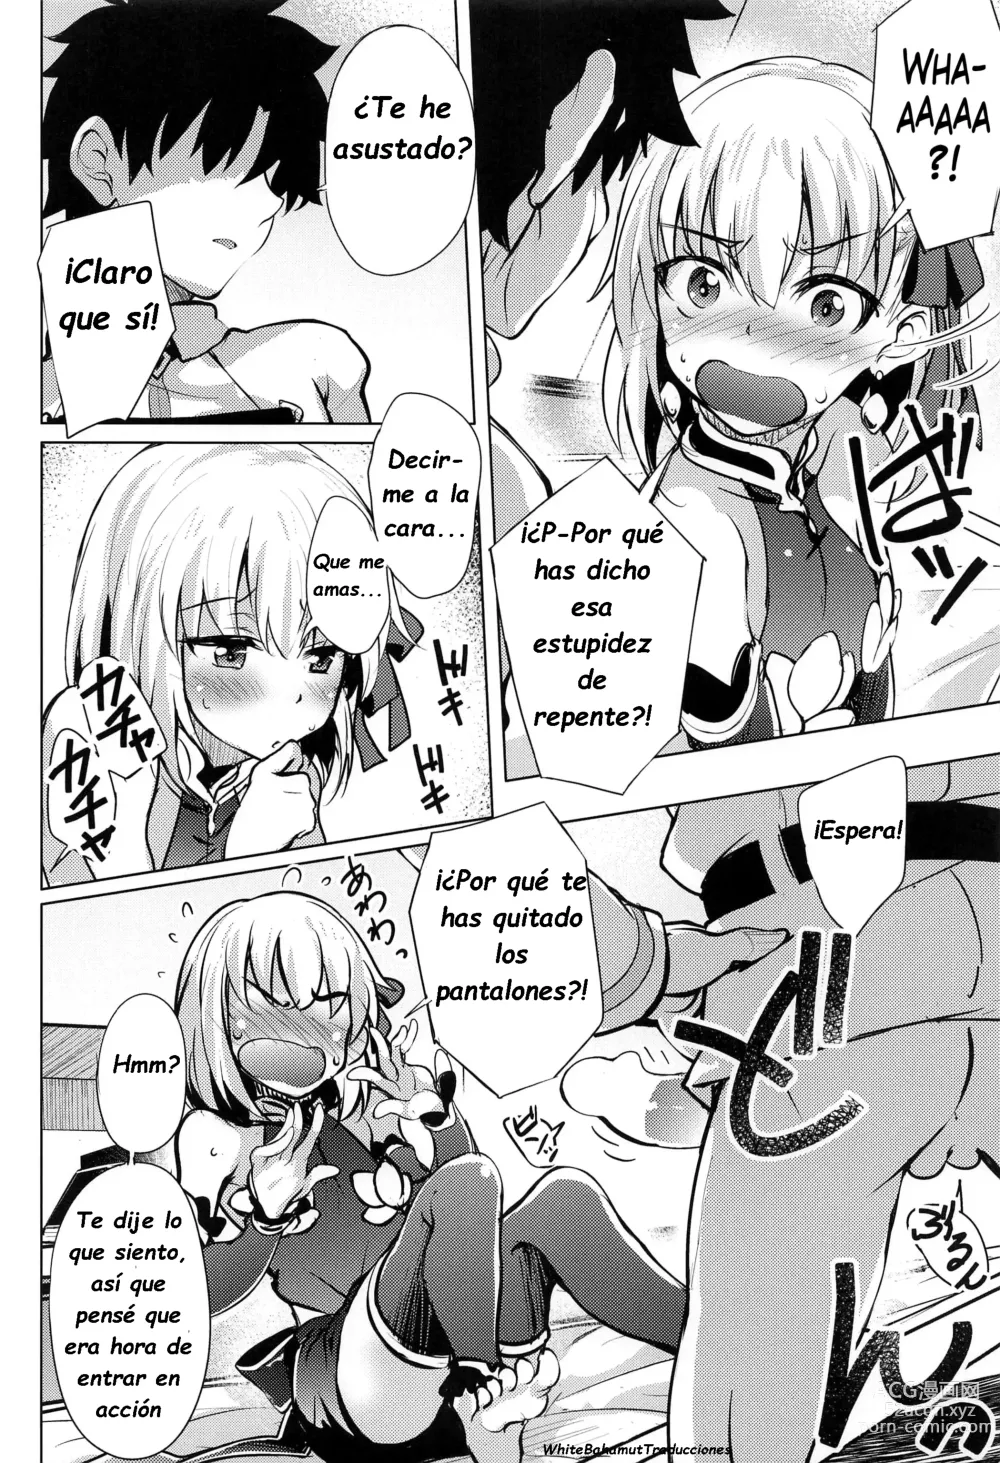 Page 5 of doujinshi Kama quiere que la quieran pero no es sincera al respecto